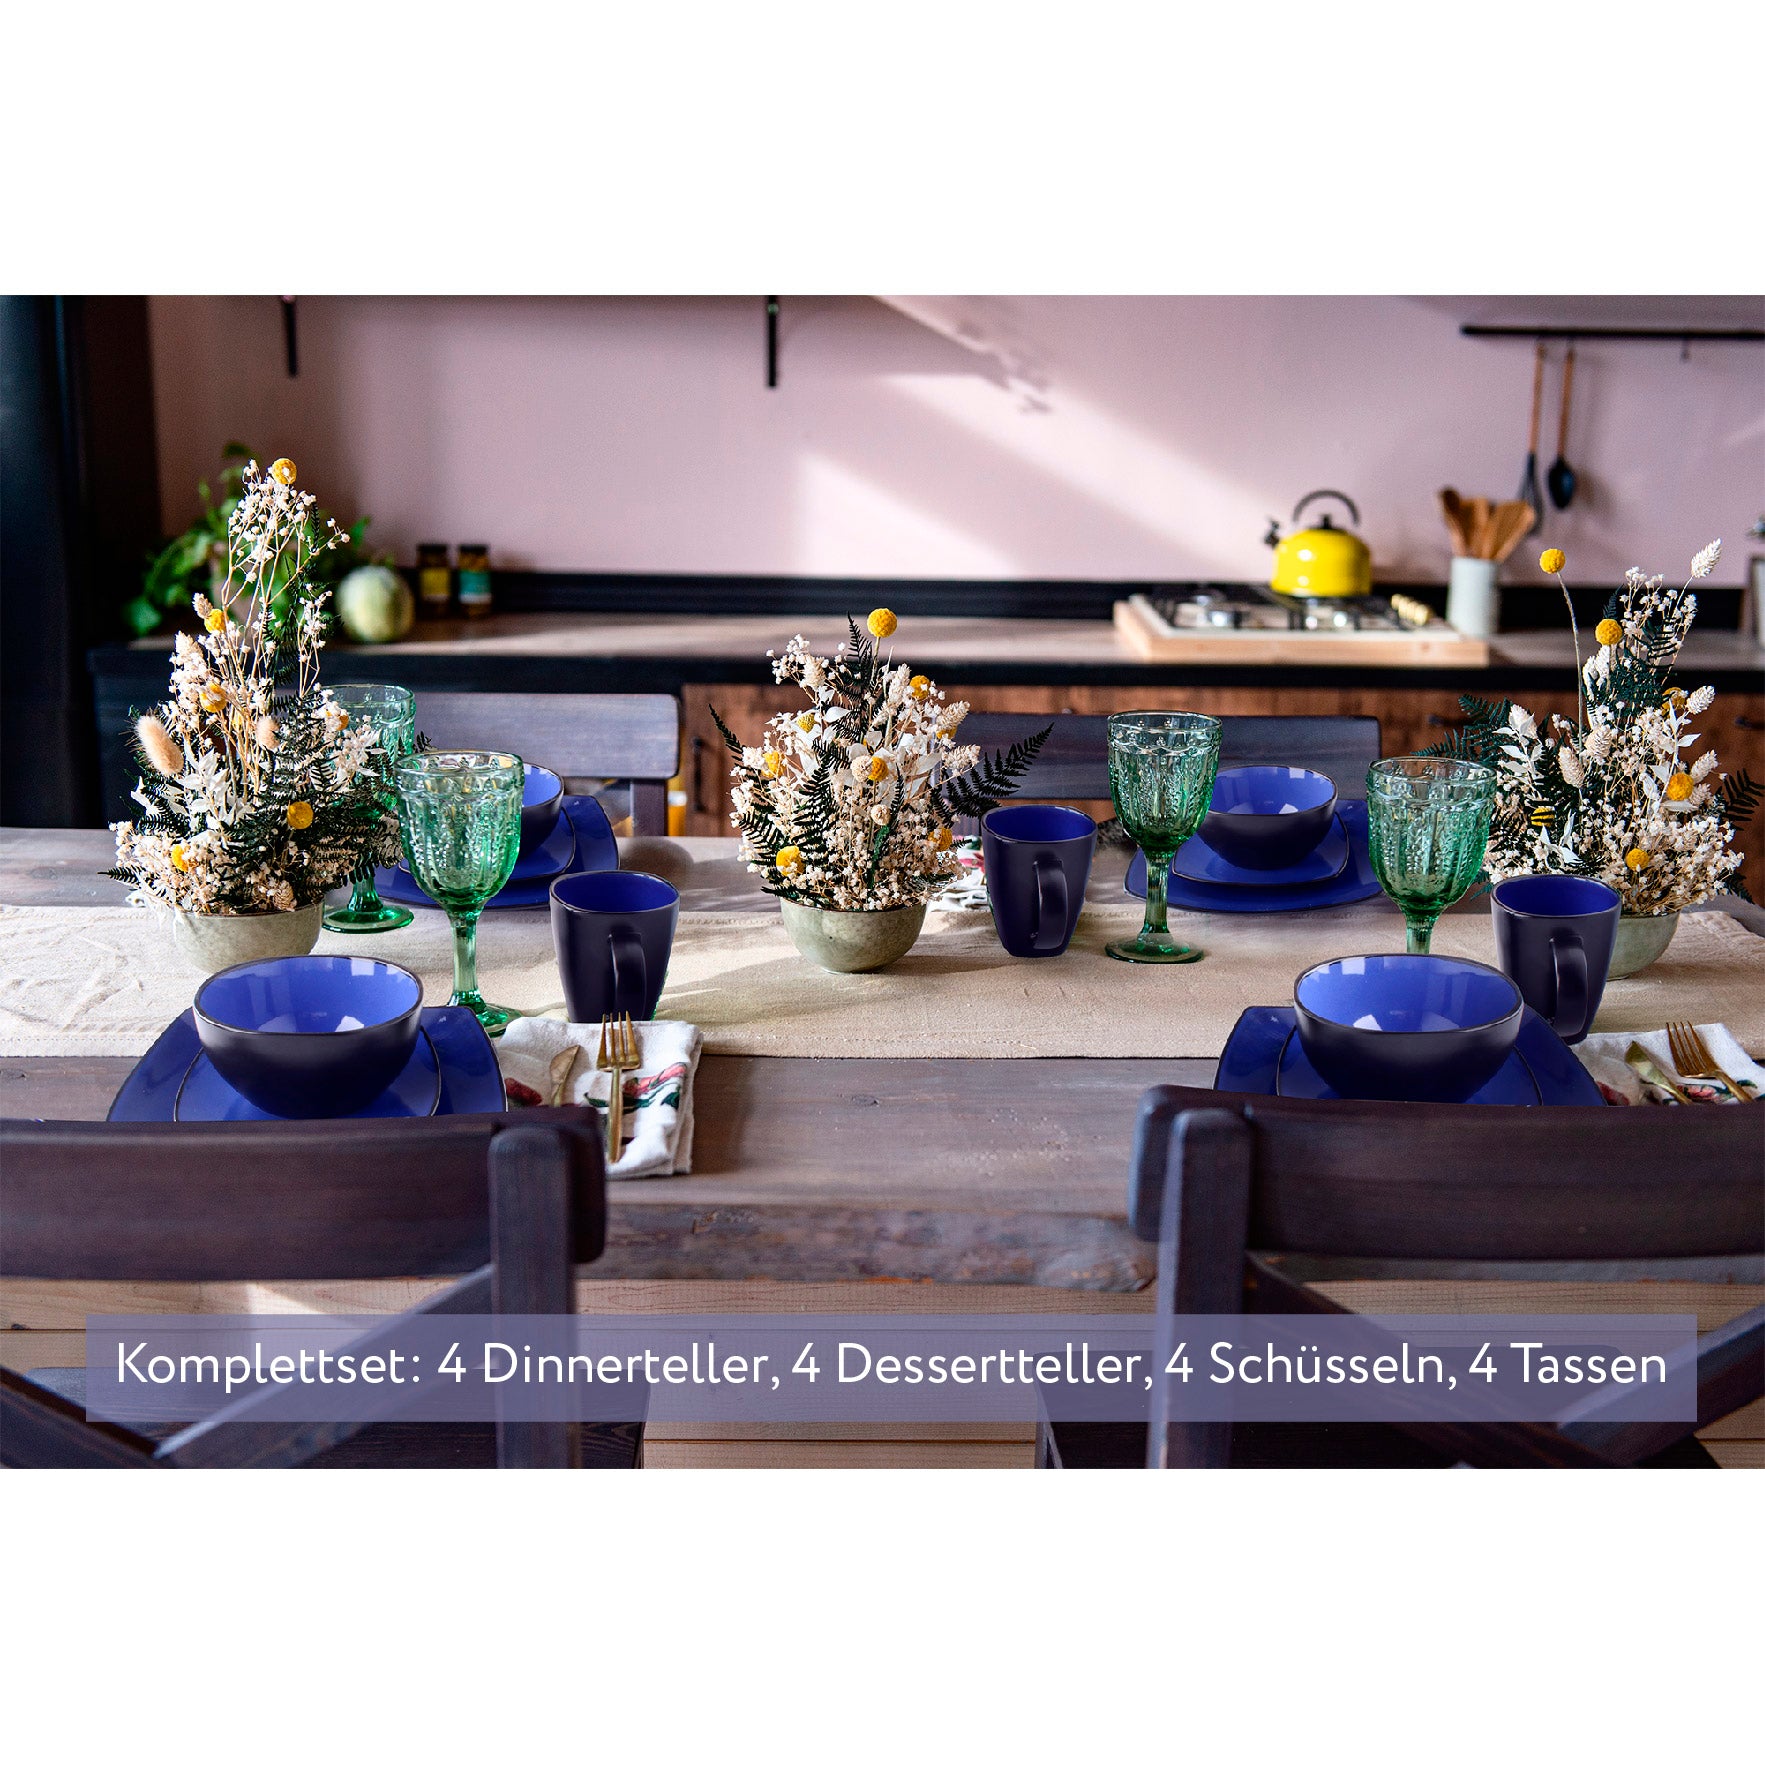 Schön gedeckter Tisch mit Blumen und blauem Geschirrset von MIAMIO mit 4 Dinnerteller, 4 Dessertteller, 4 Schüsseln und 4 Tassen